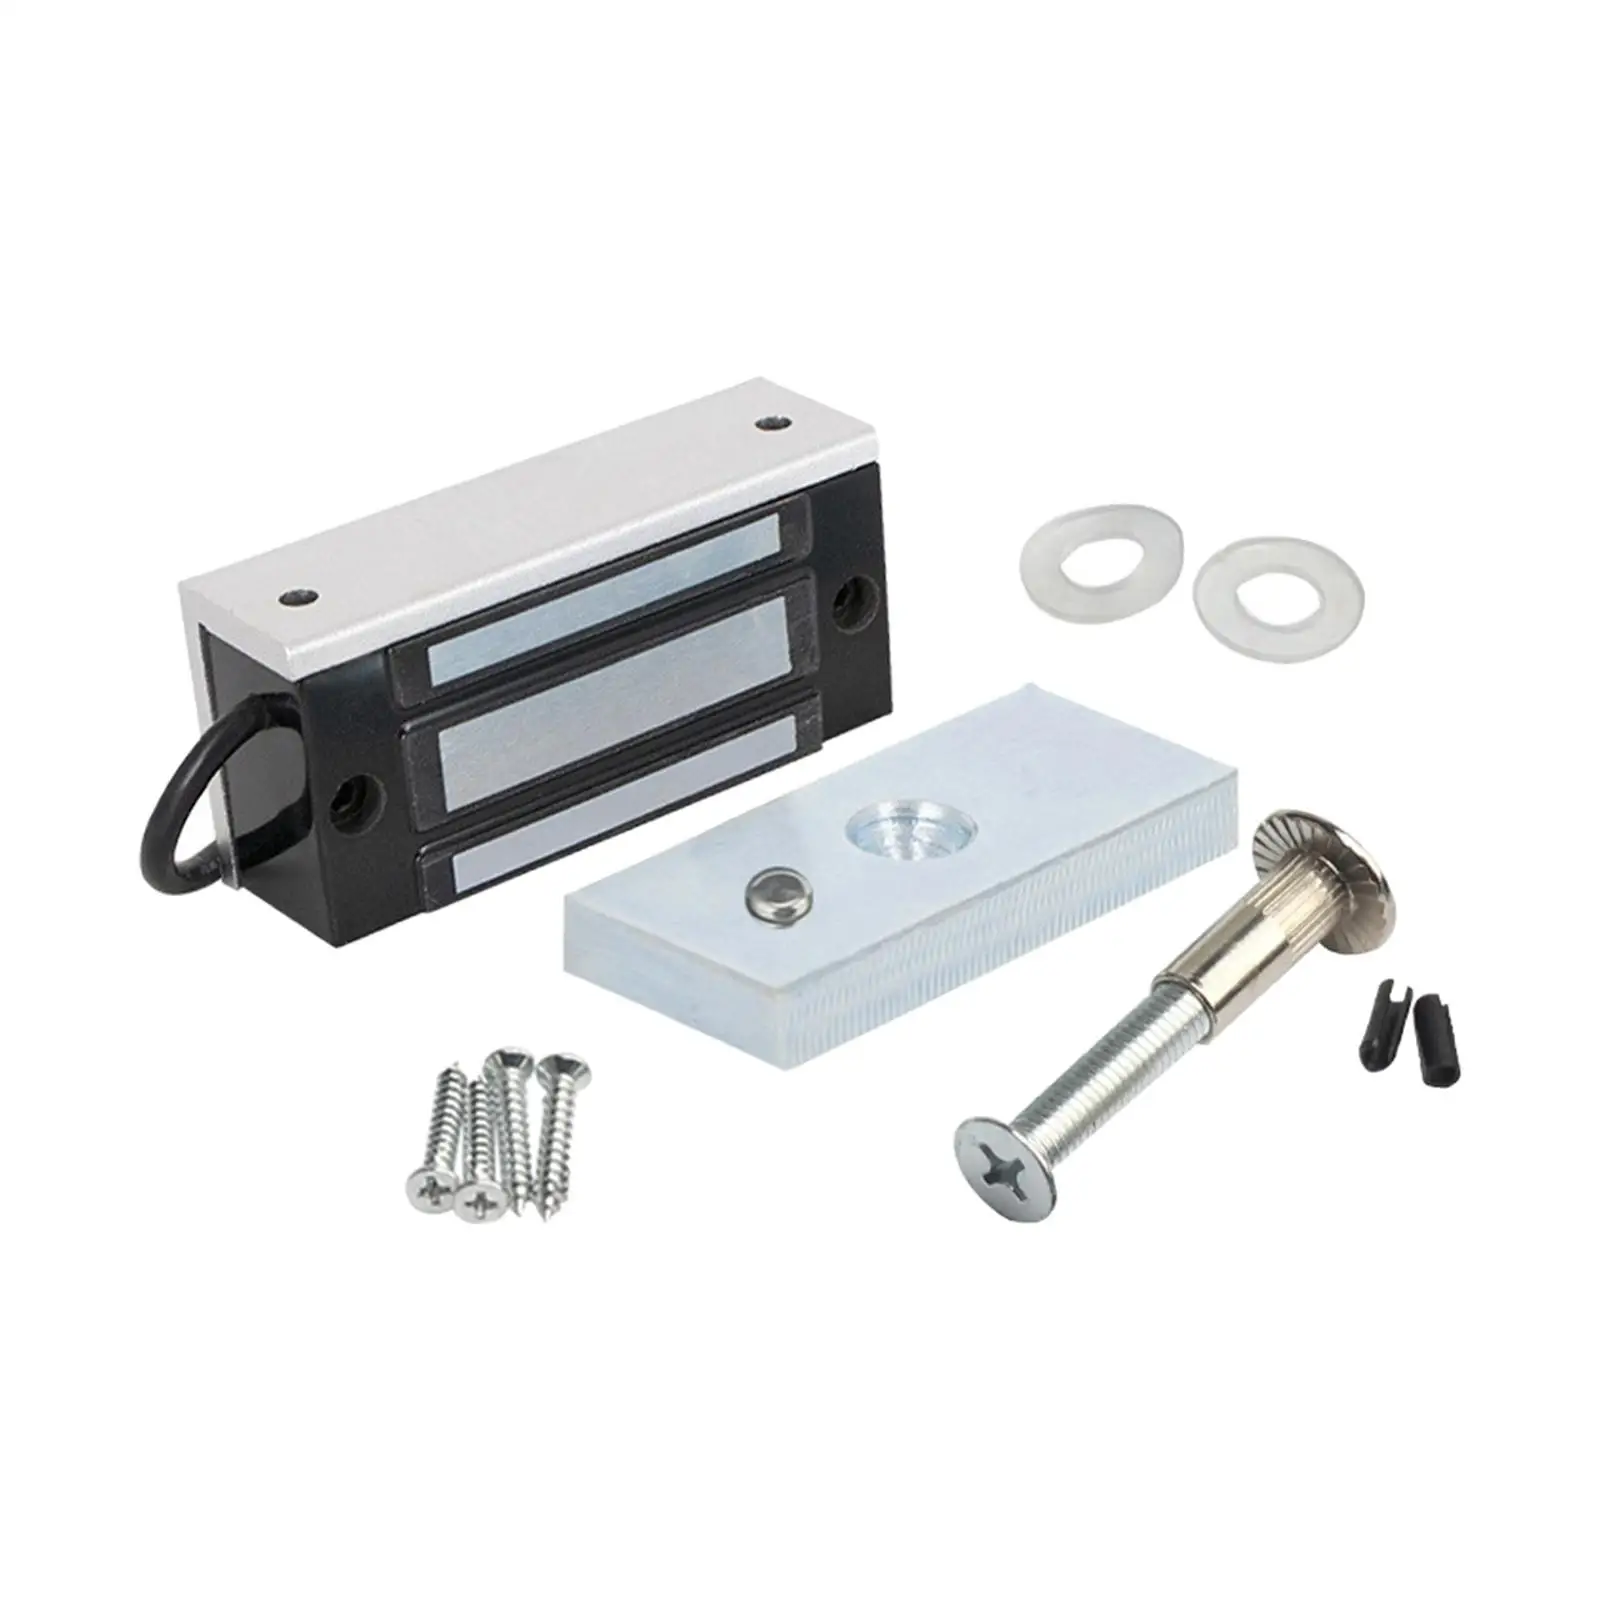 12V Electromagnetic Lock Electric Lock Electric Magnetic Lock for Metal Door Cabinet Glass Door Wooden Door Home Security System